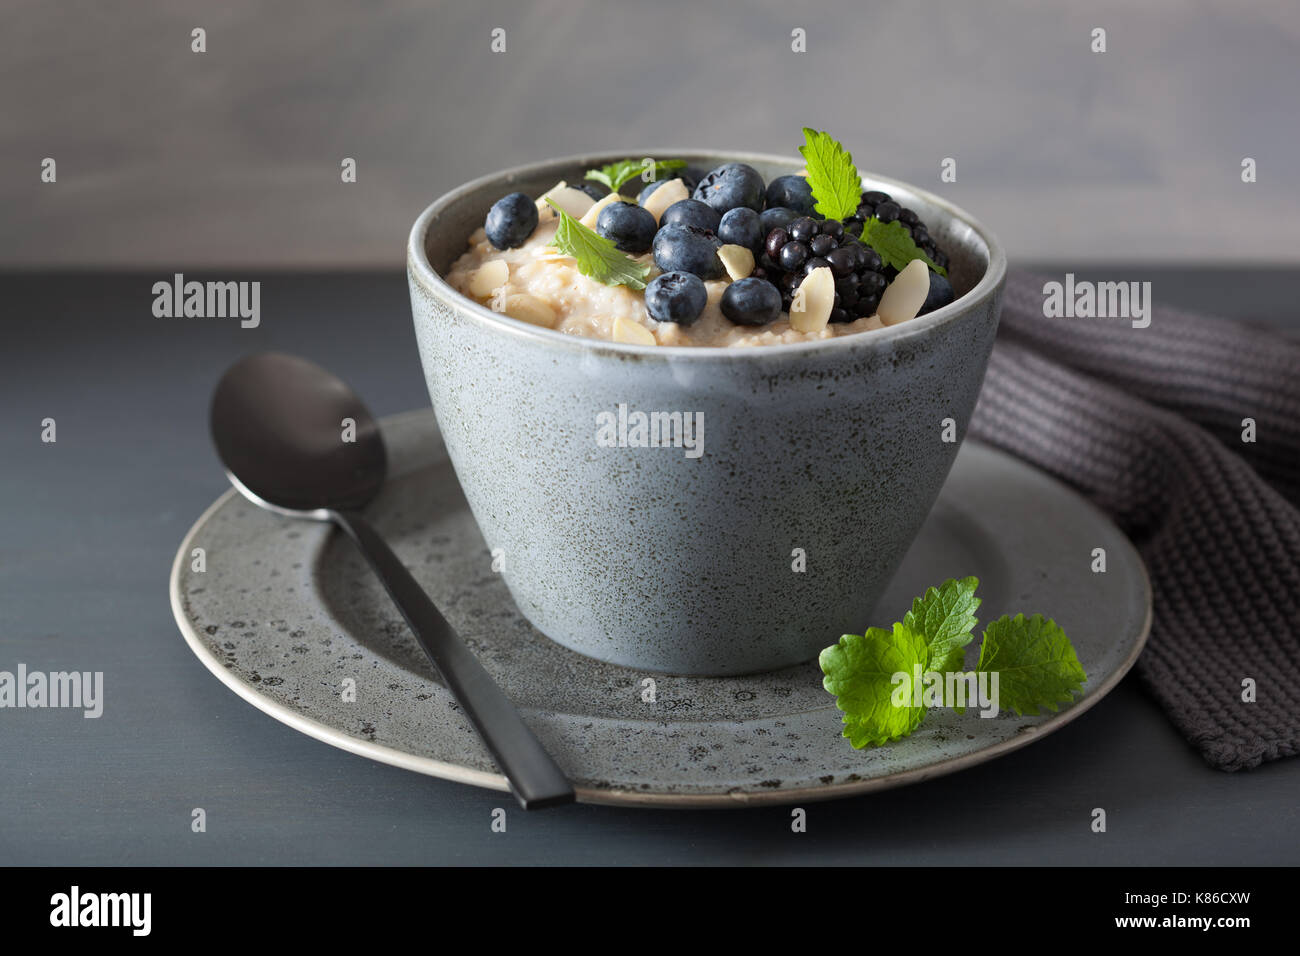 Sana colazione acciaio tagliati i fiocchi d'avena porridge con mirtillo blackberry Foto Stock